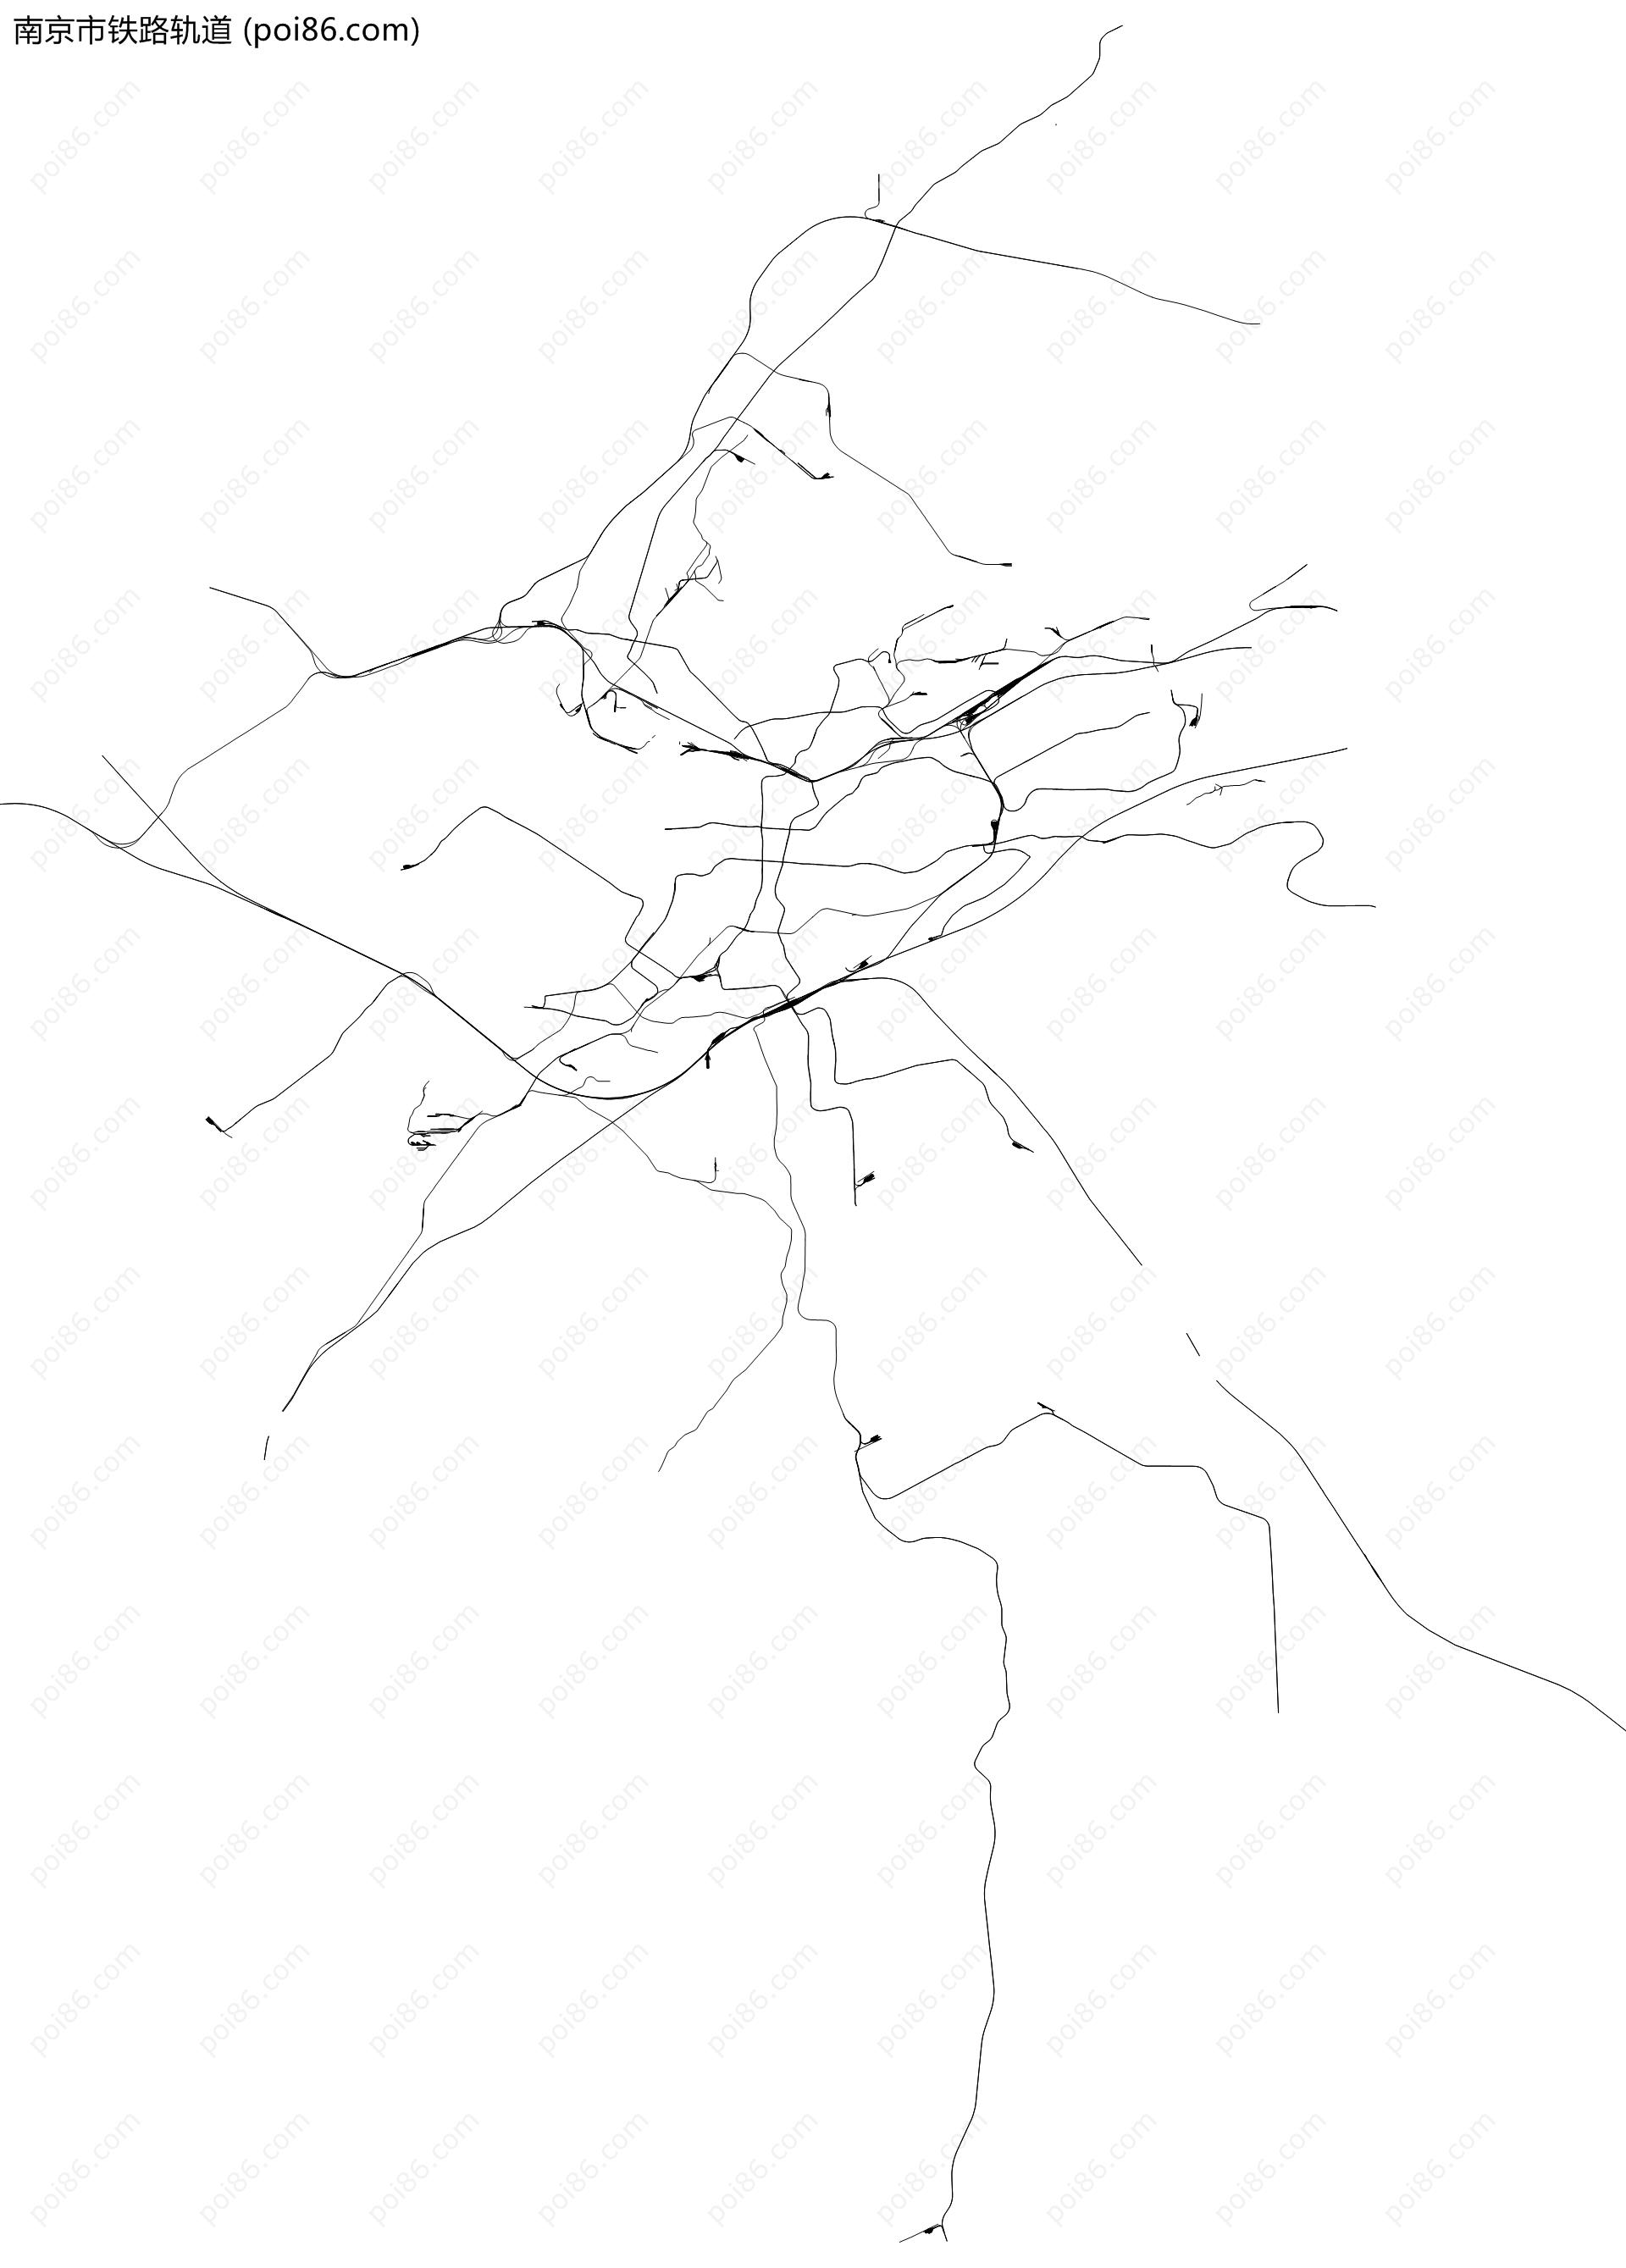 南京市铁路轨道地图